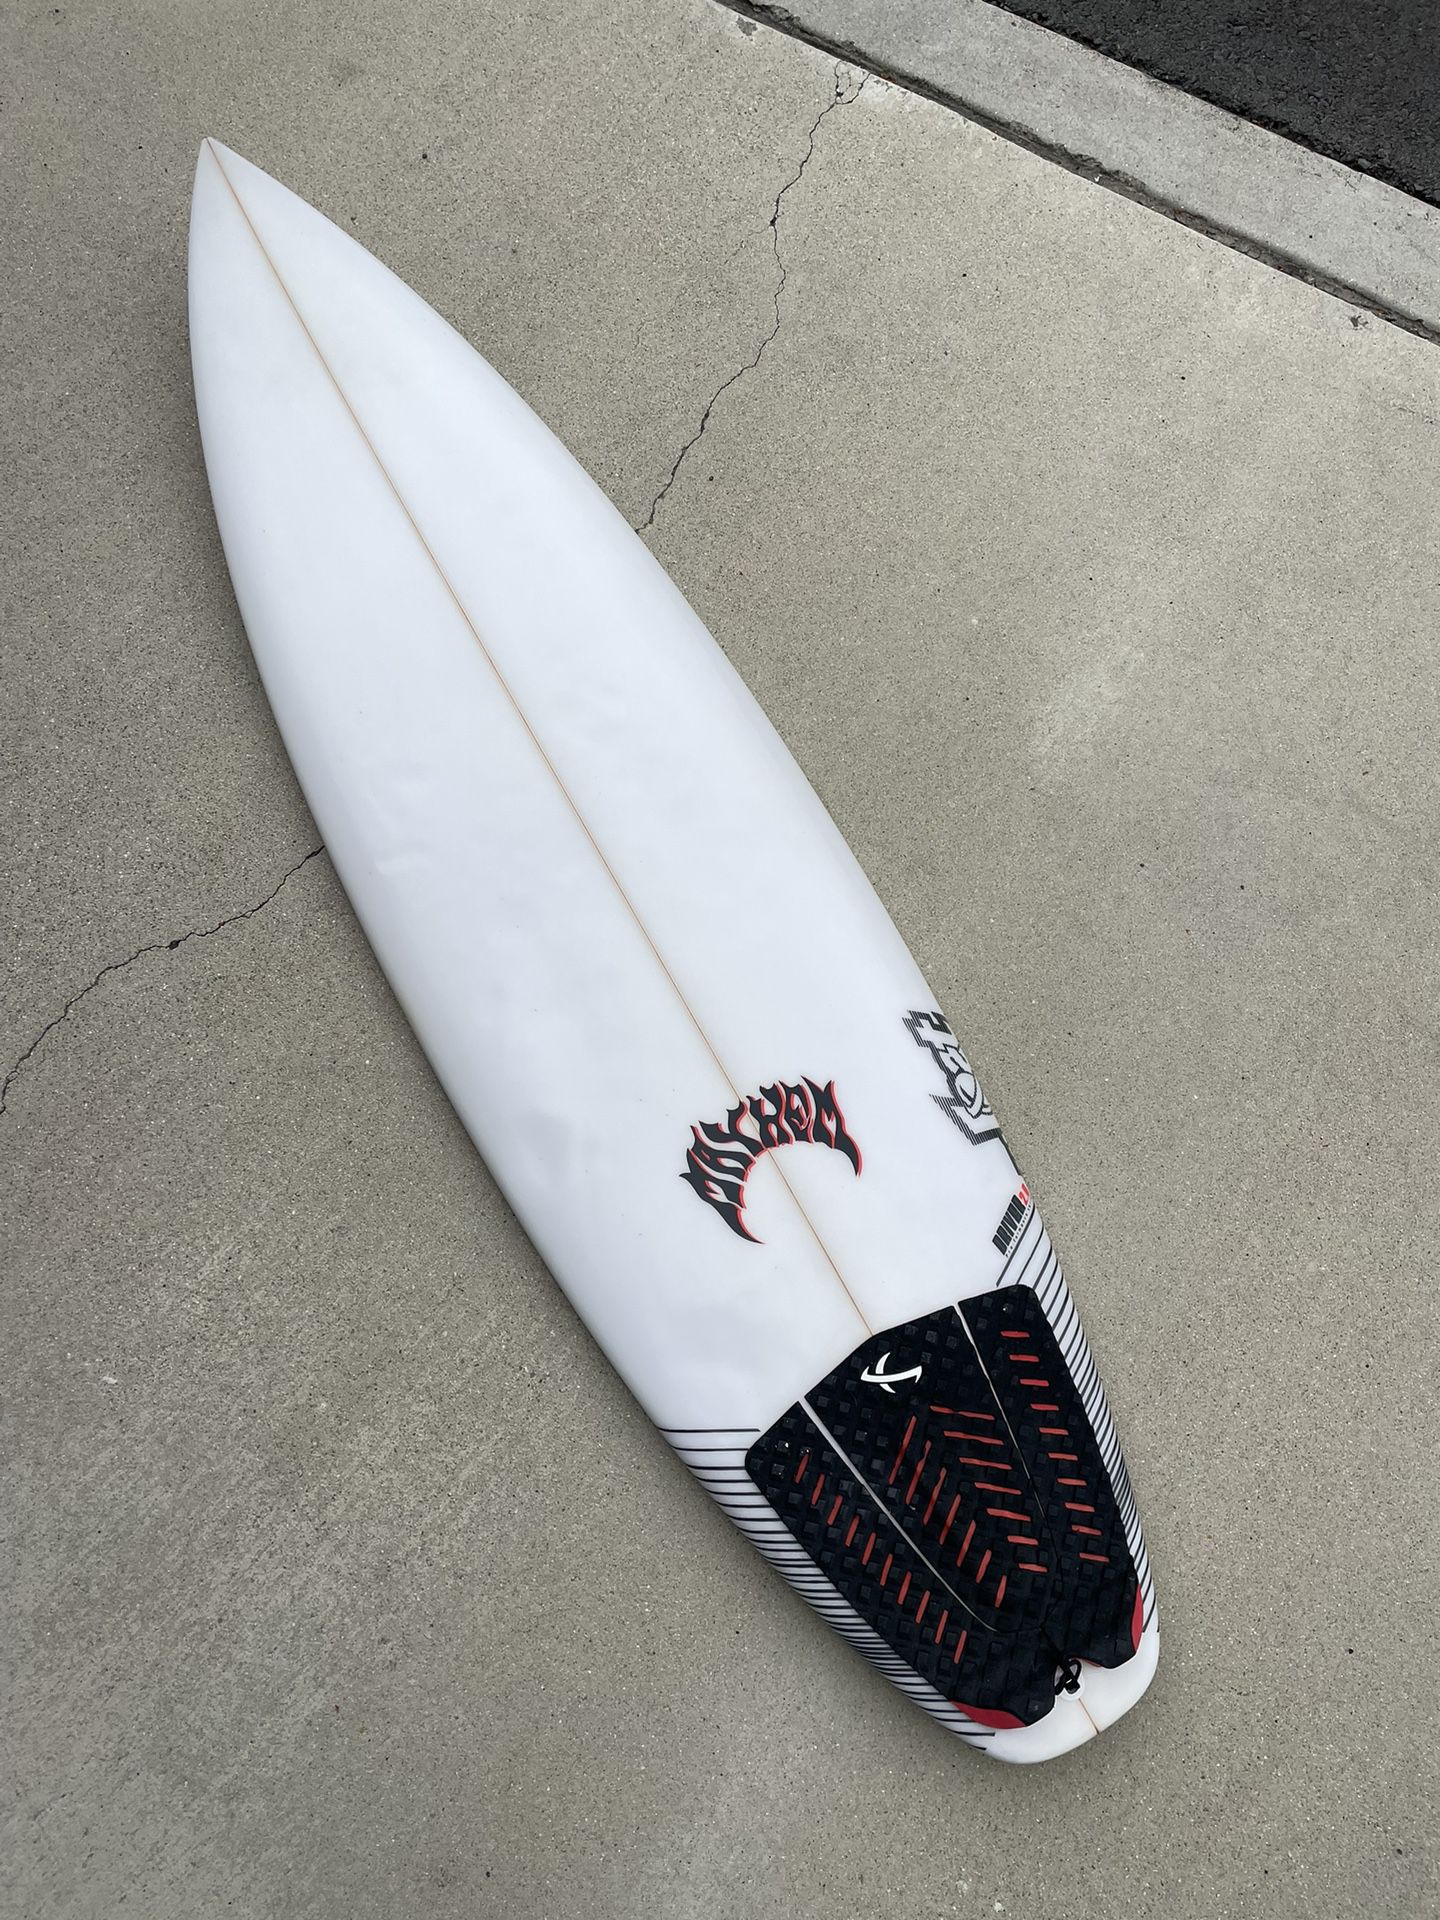 5’11 Lost Surfboard